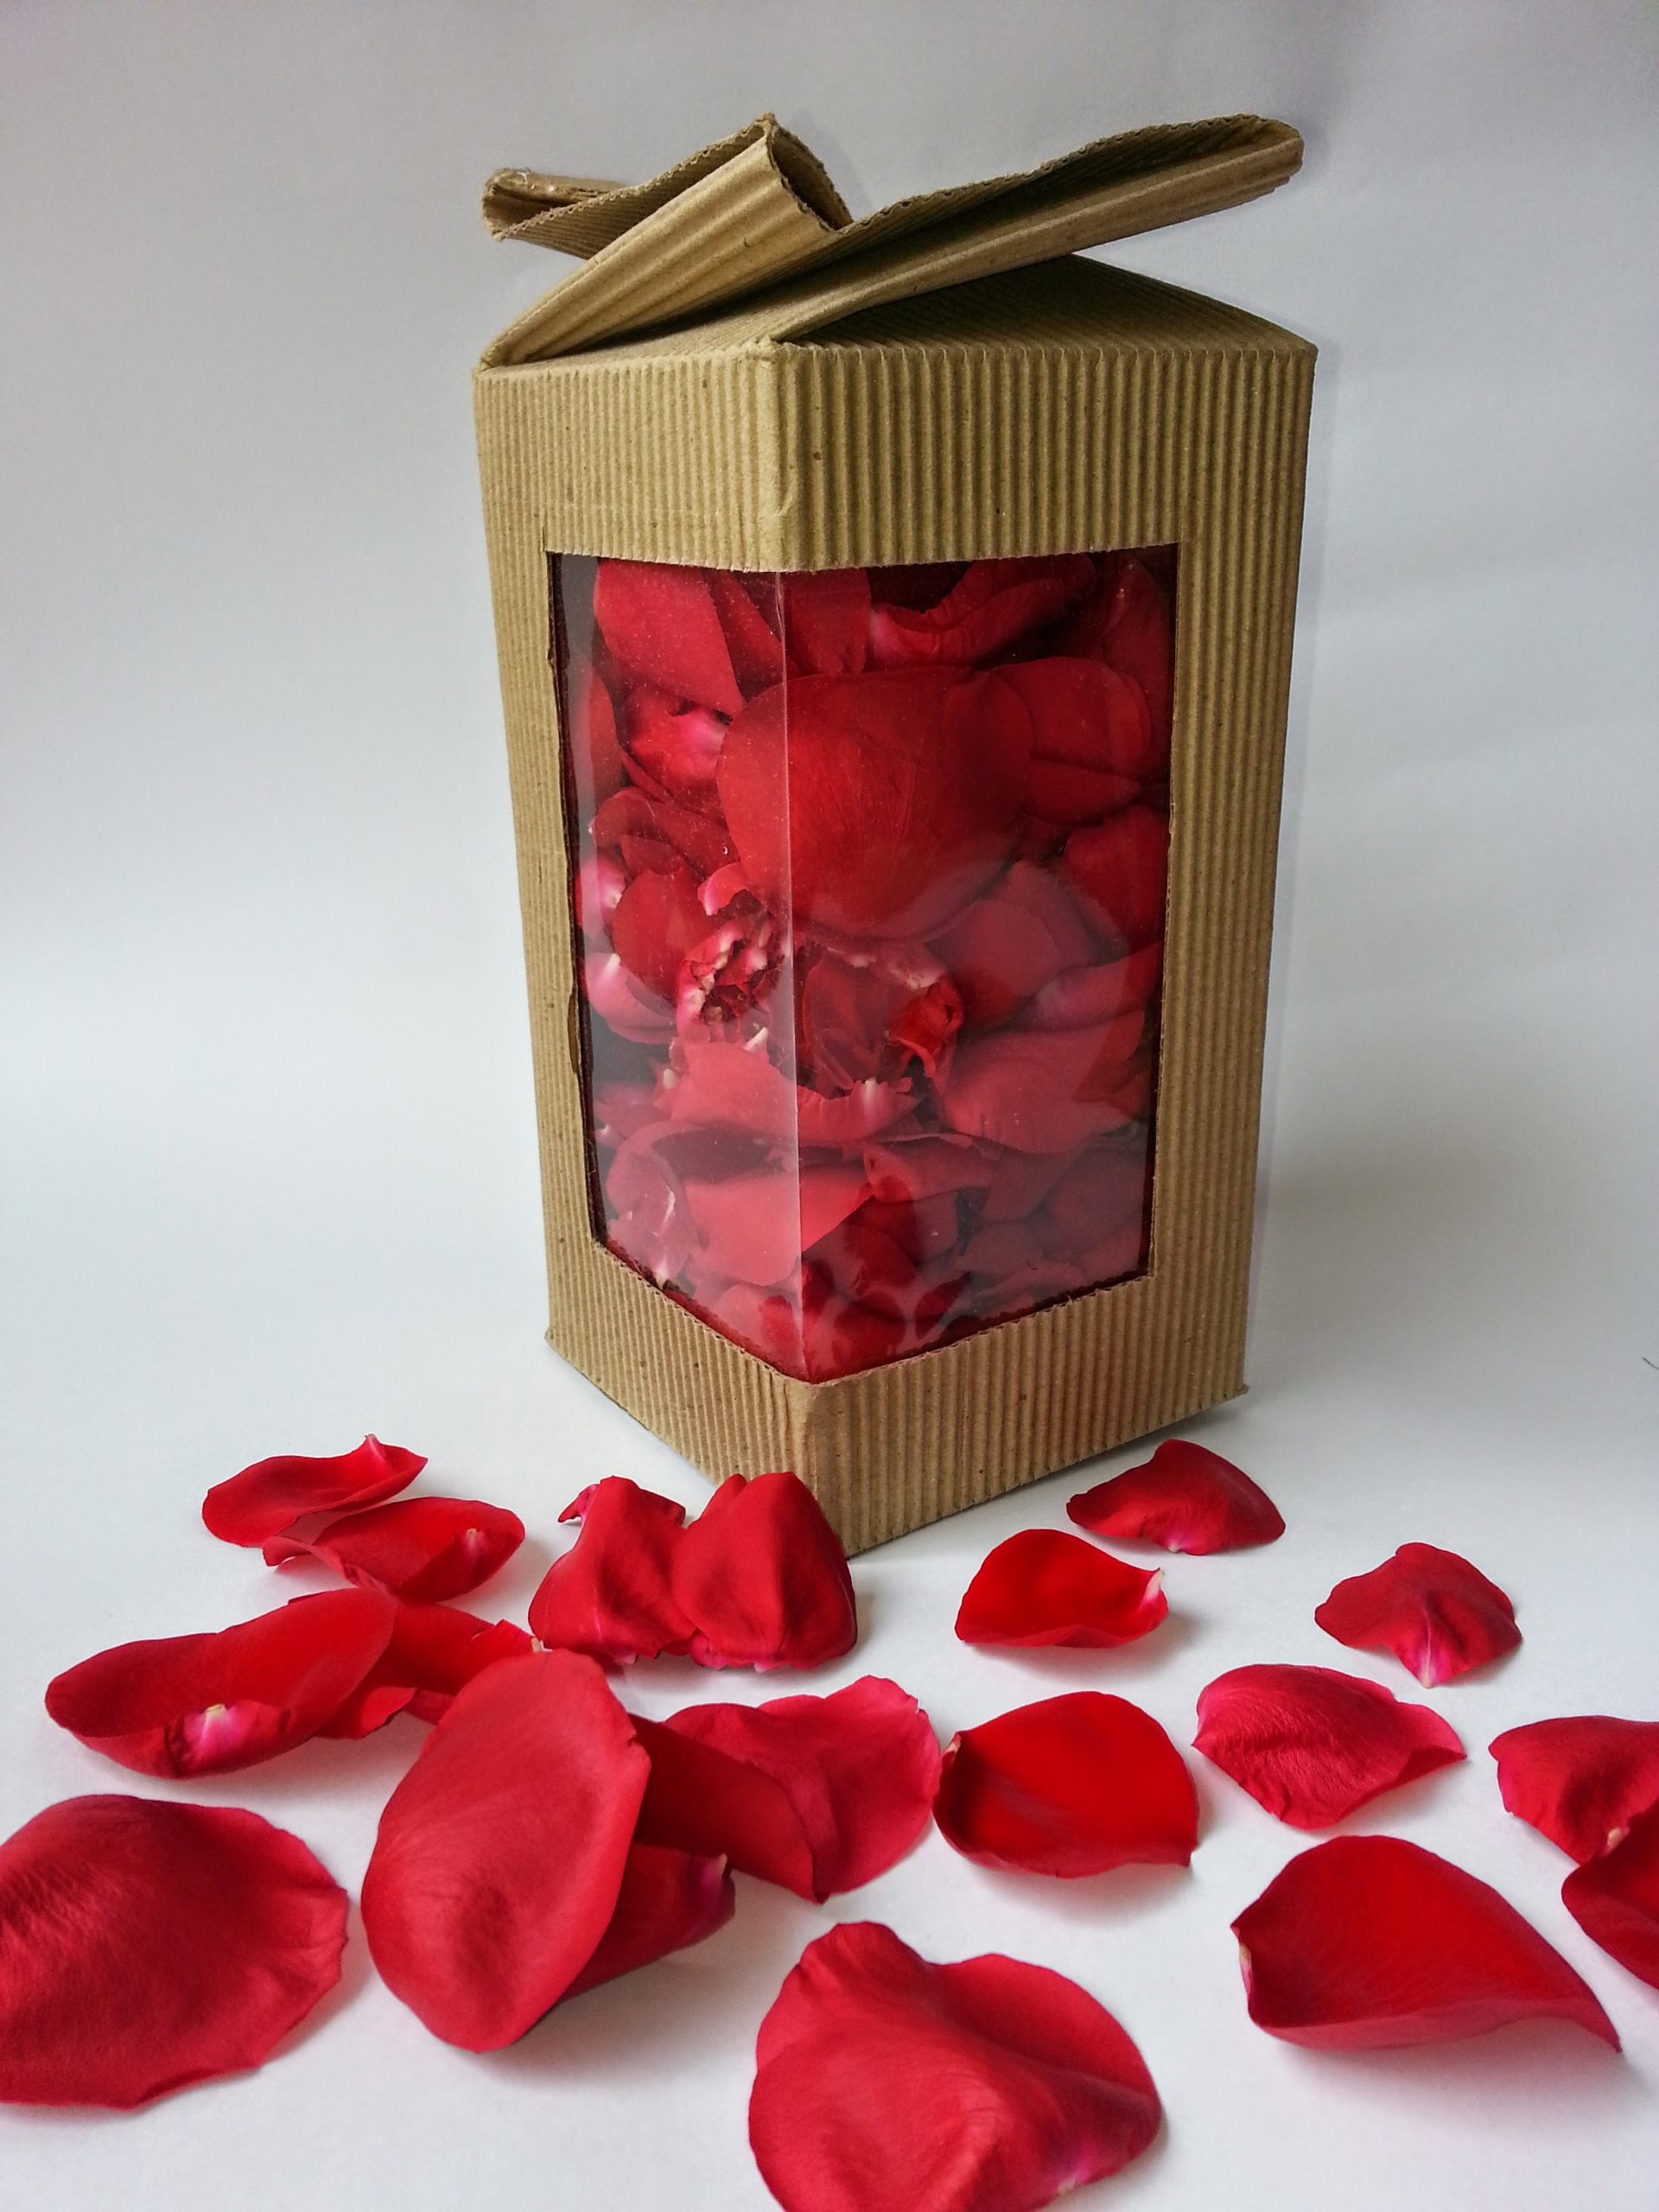 Red Silk Rose Petals, 100 petals per bag